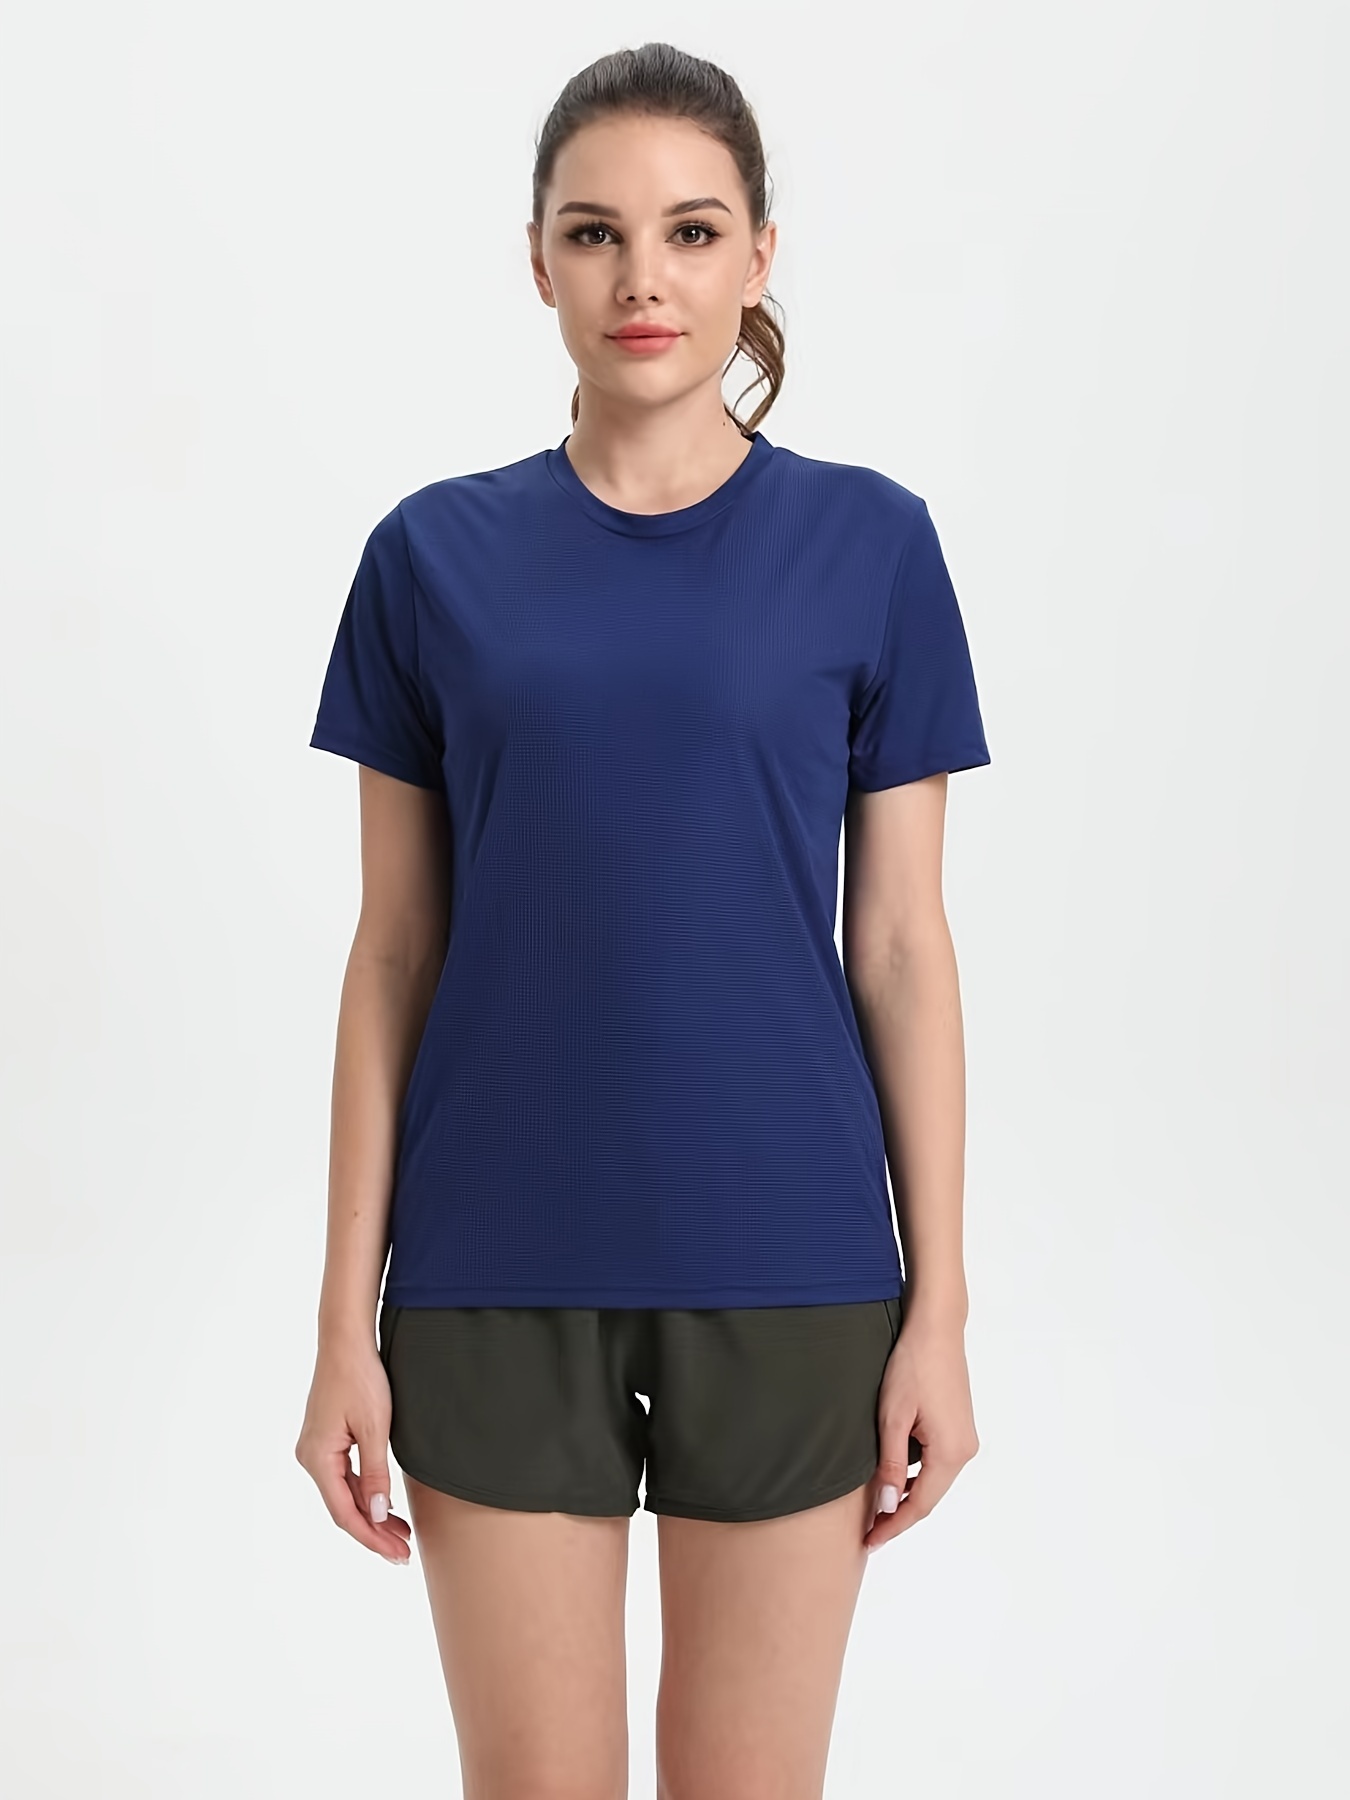 Camiseta para correr para hombre, de poliéster, de secado rápido, para  entrenamiento, ejercicio, gimnasio, deporte, camiseta ligera (color : 4,  talla